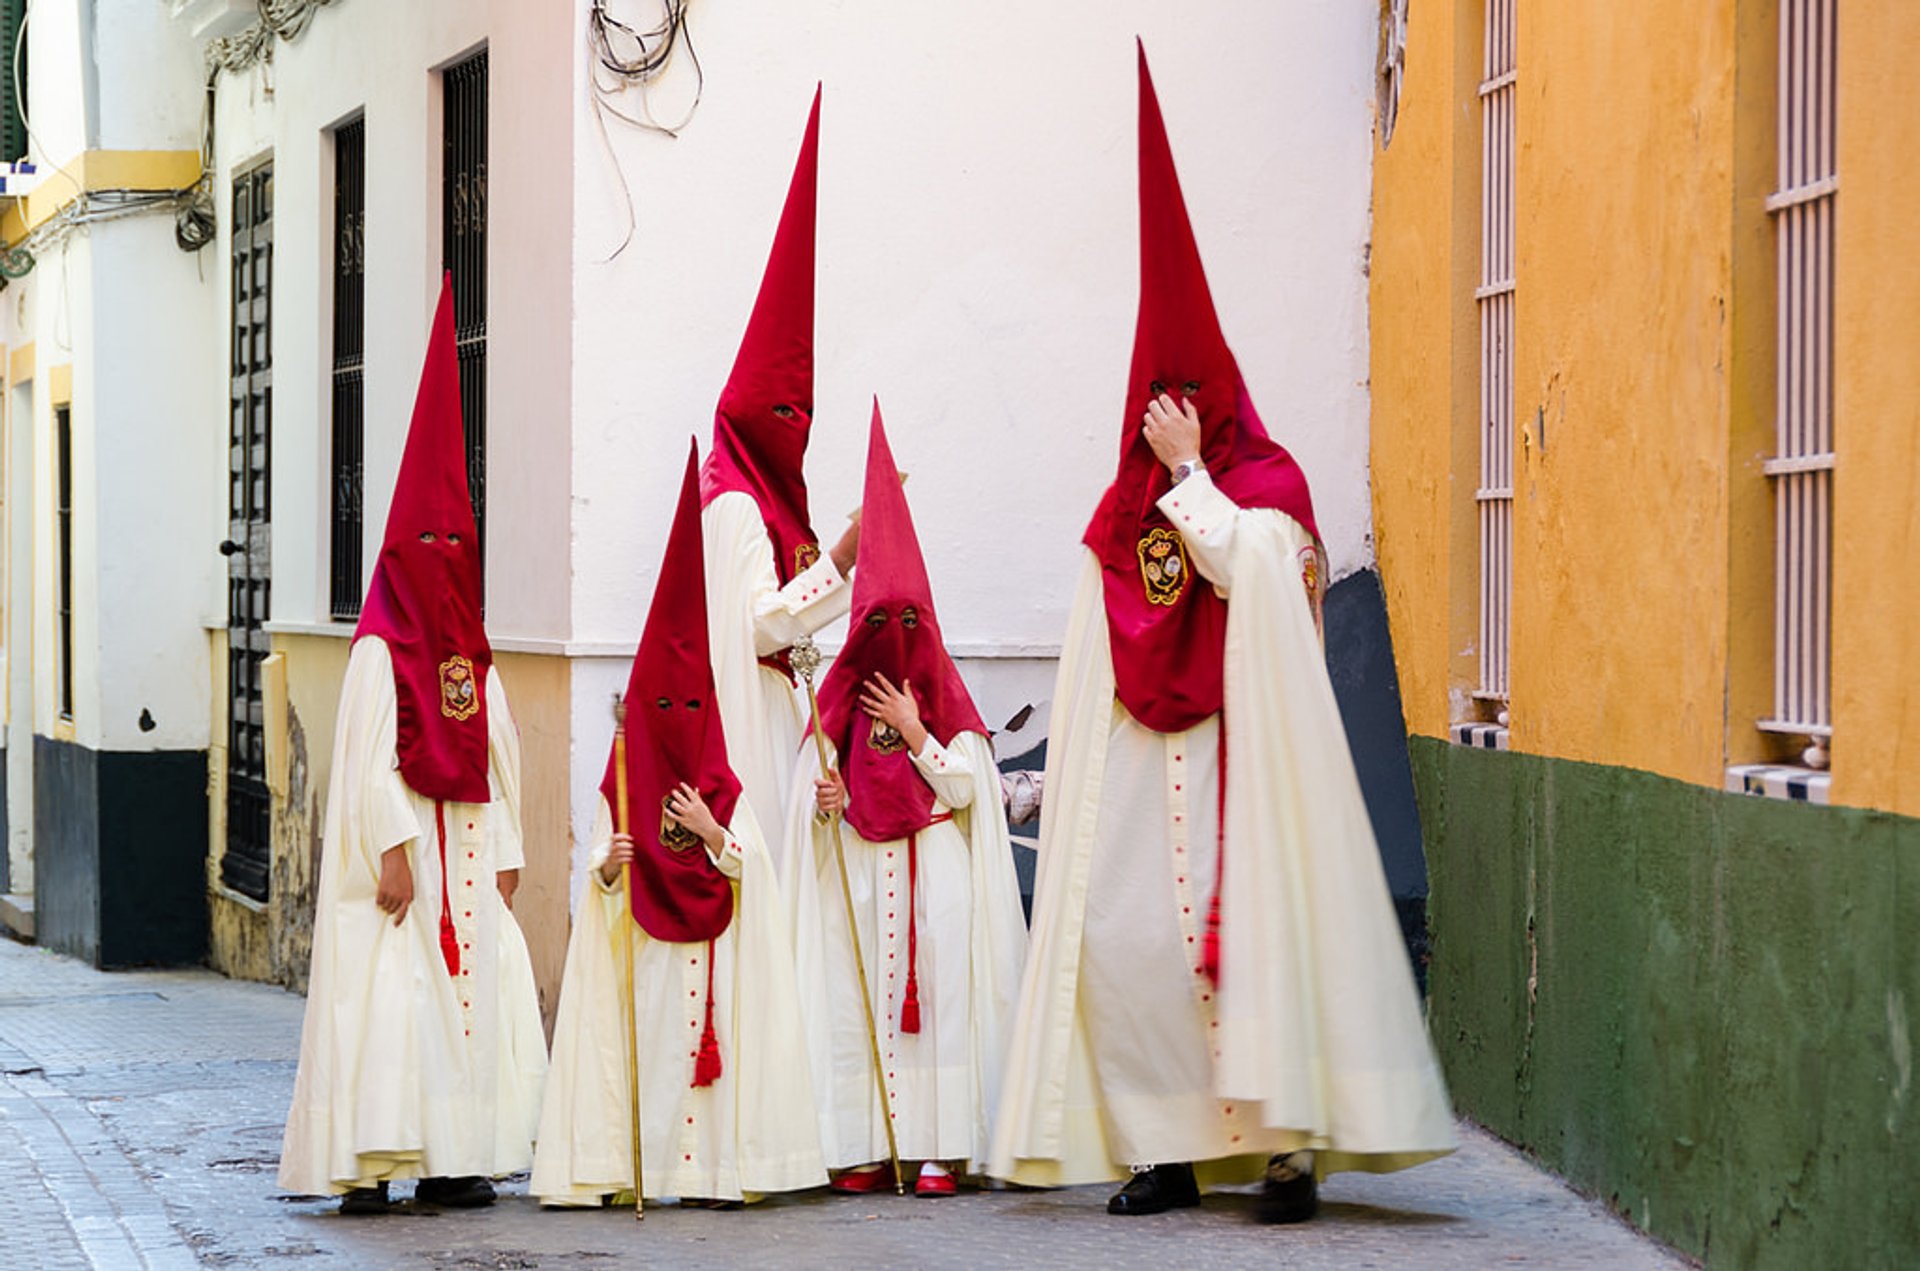 Semana Santa (Holy Week) & Easter 2023 in Spain - Dates